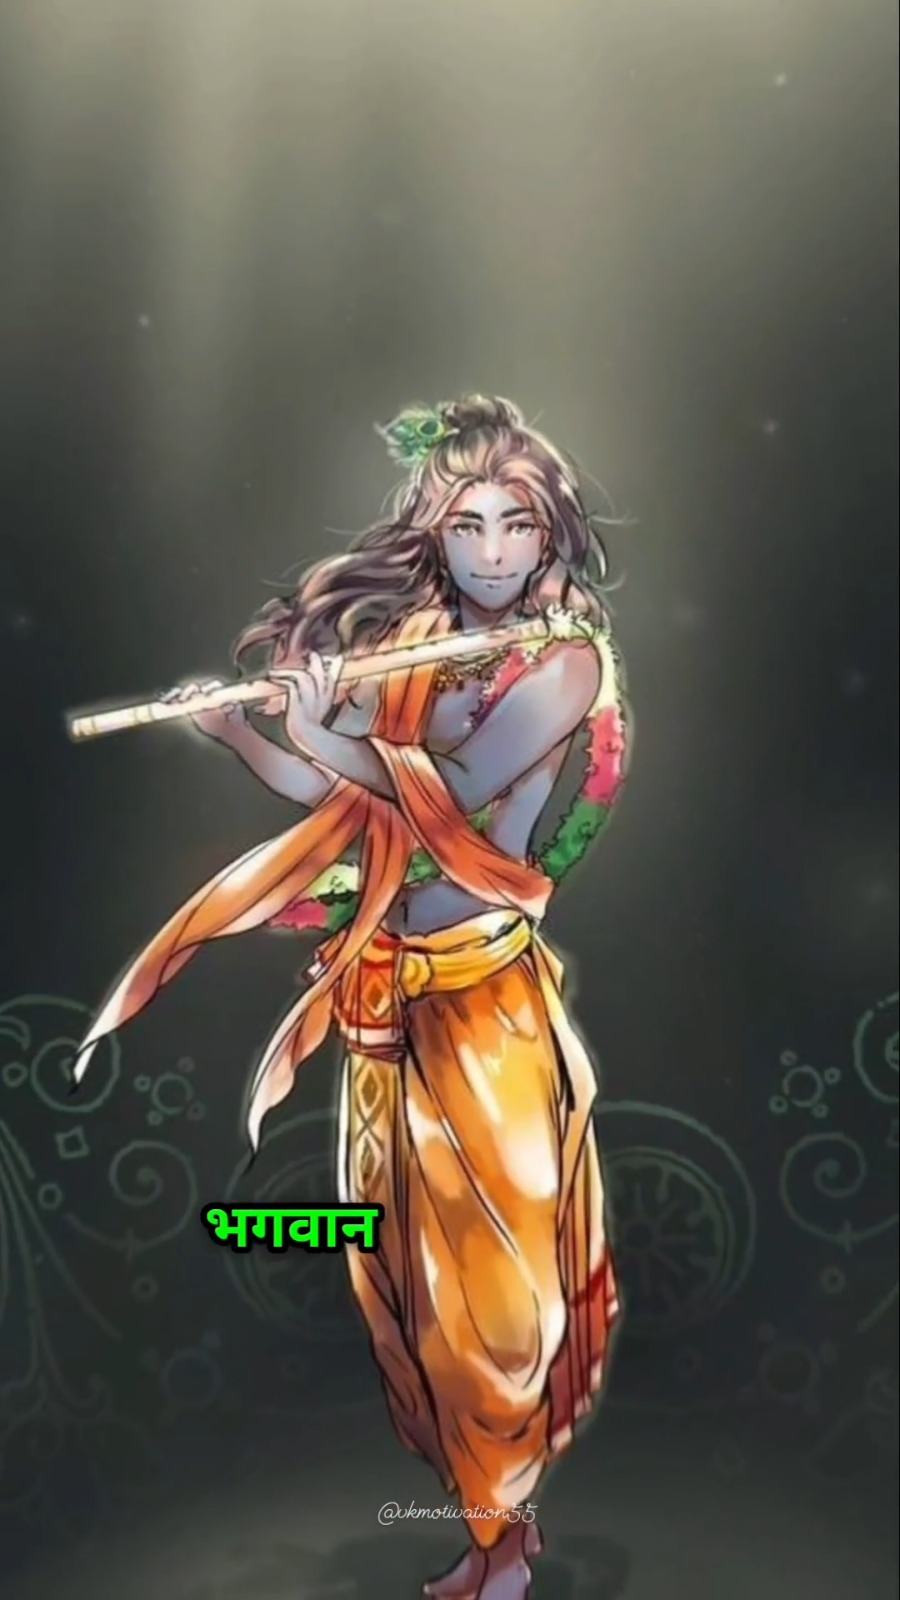 Jai Shree Krishna 😊